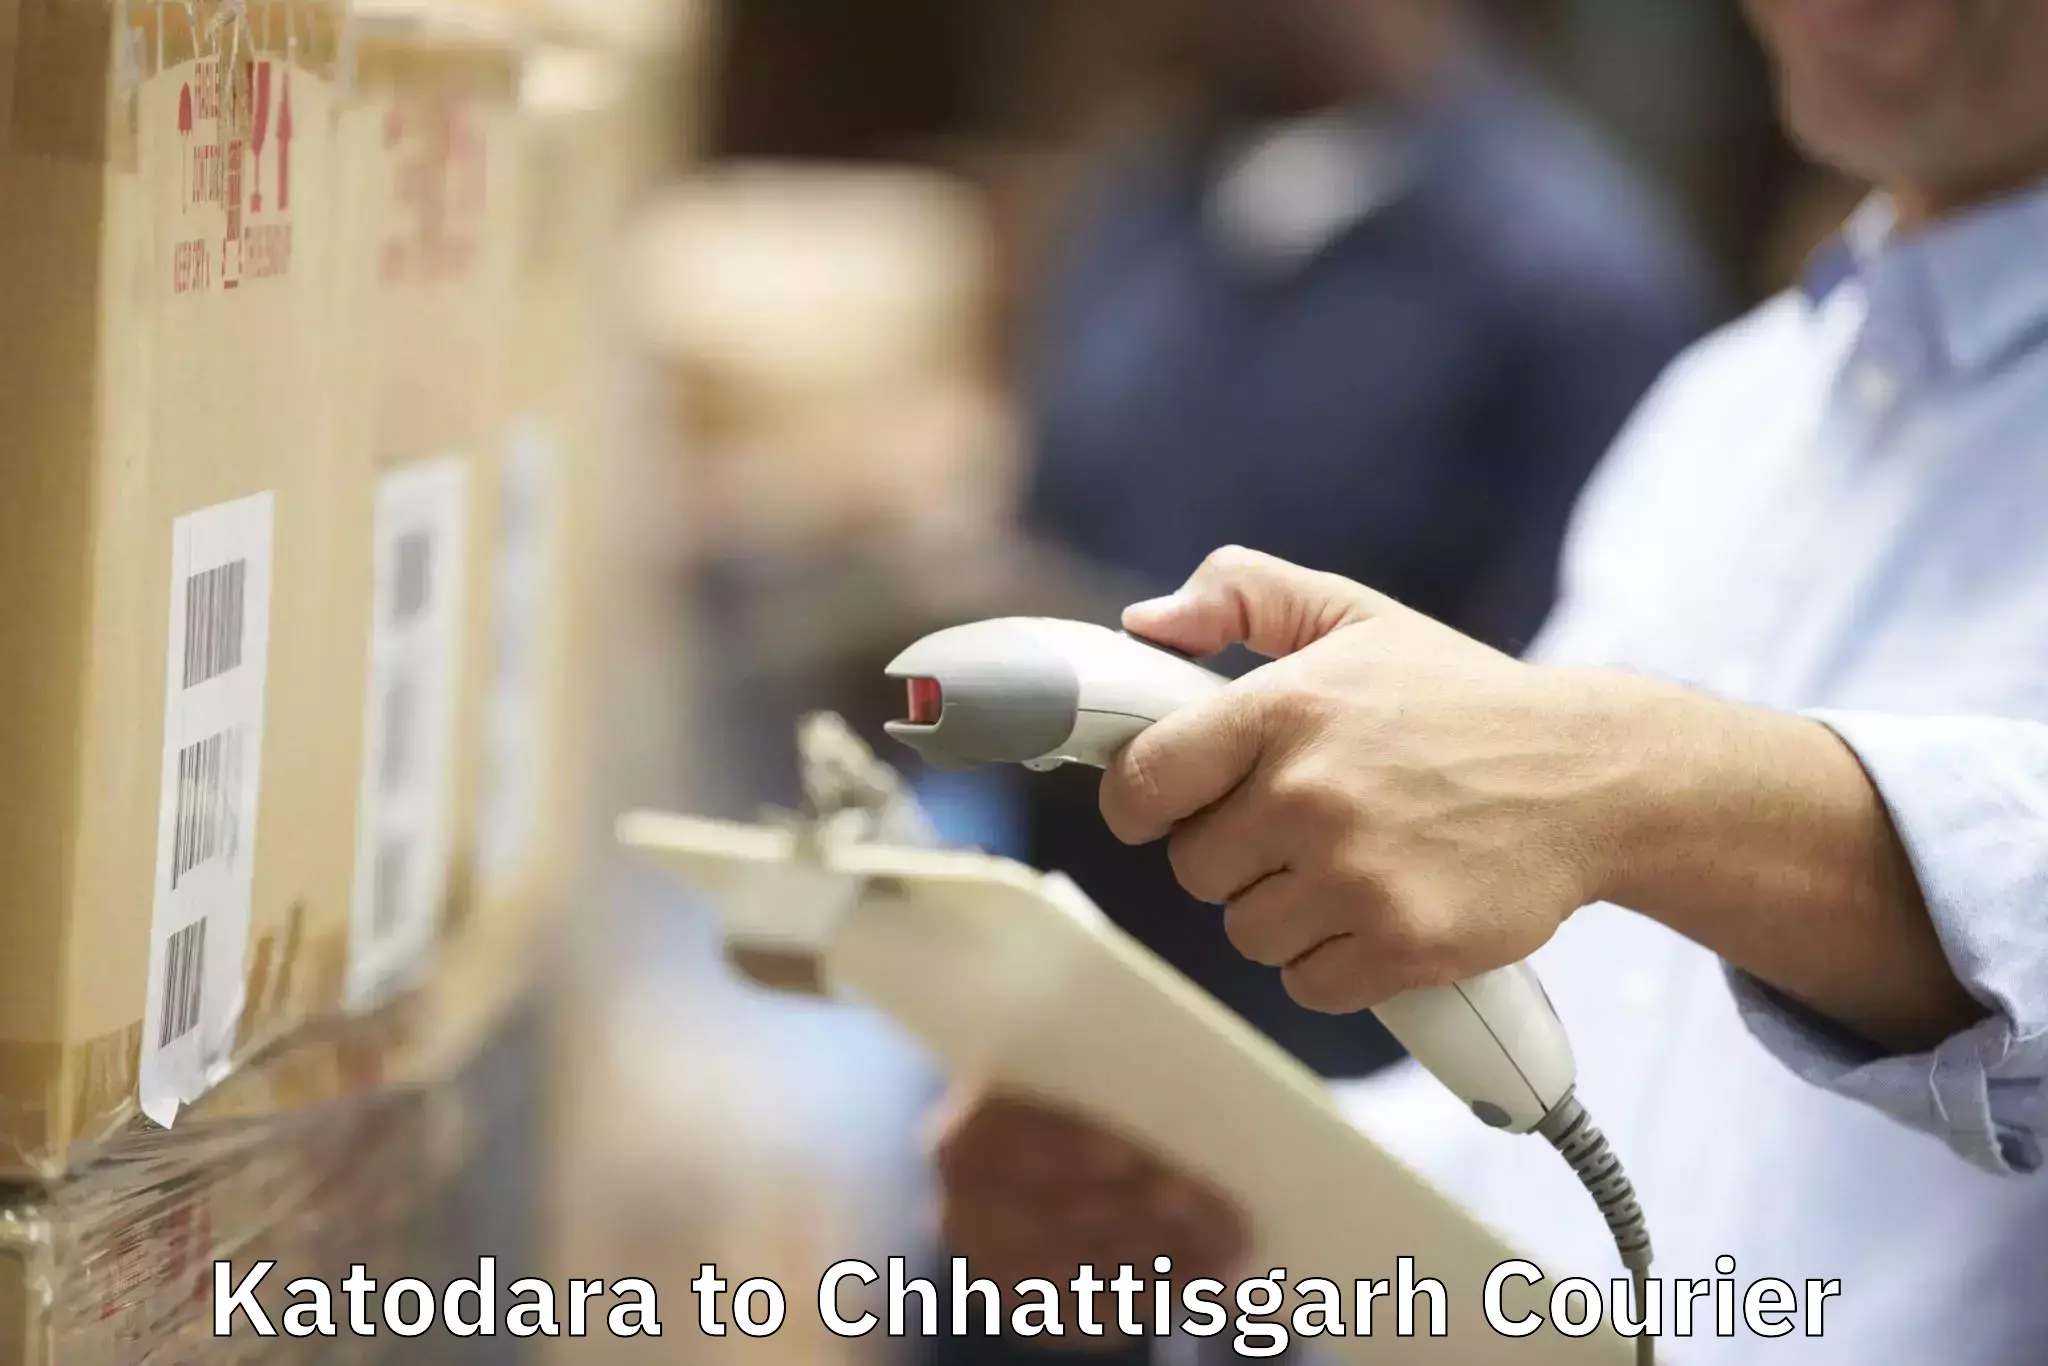 Safe household movers Katodara to Bijapur Chhattisgarh